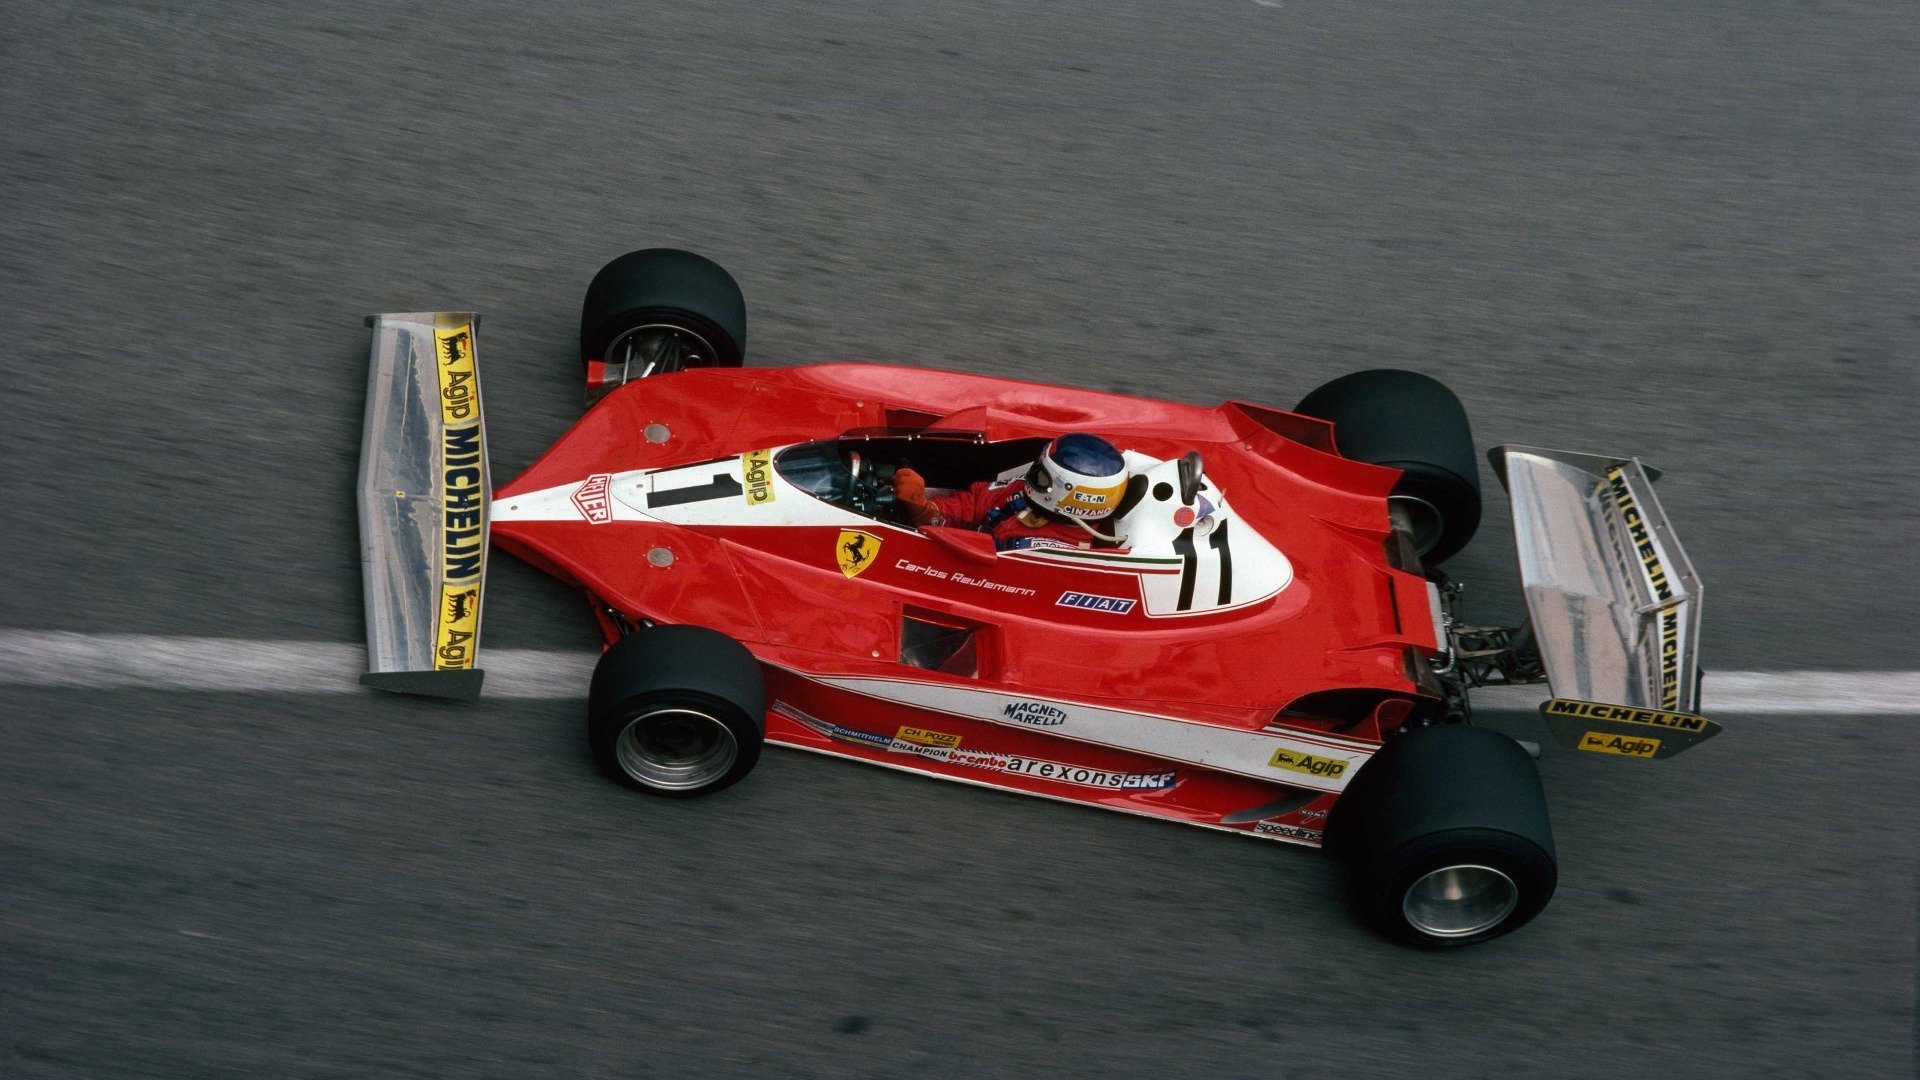 3. The Talented Mr Ferrari